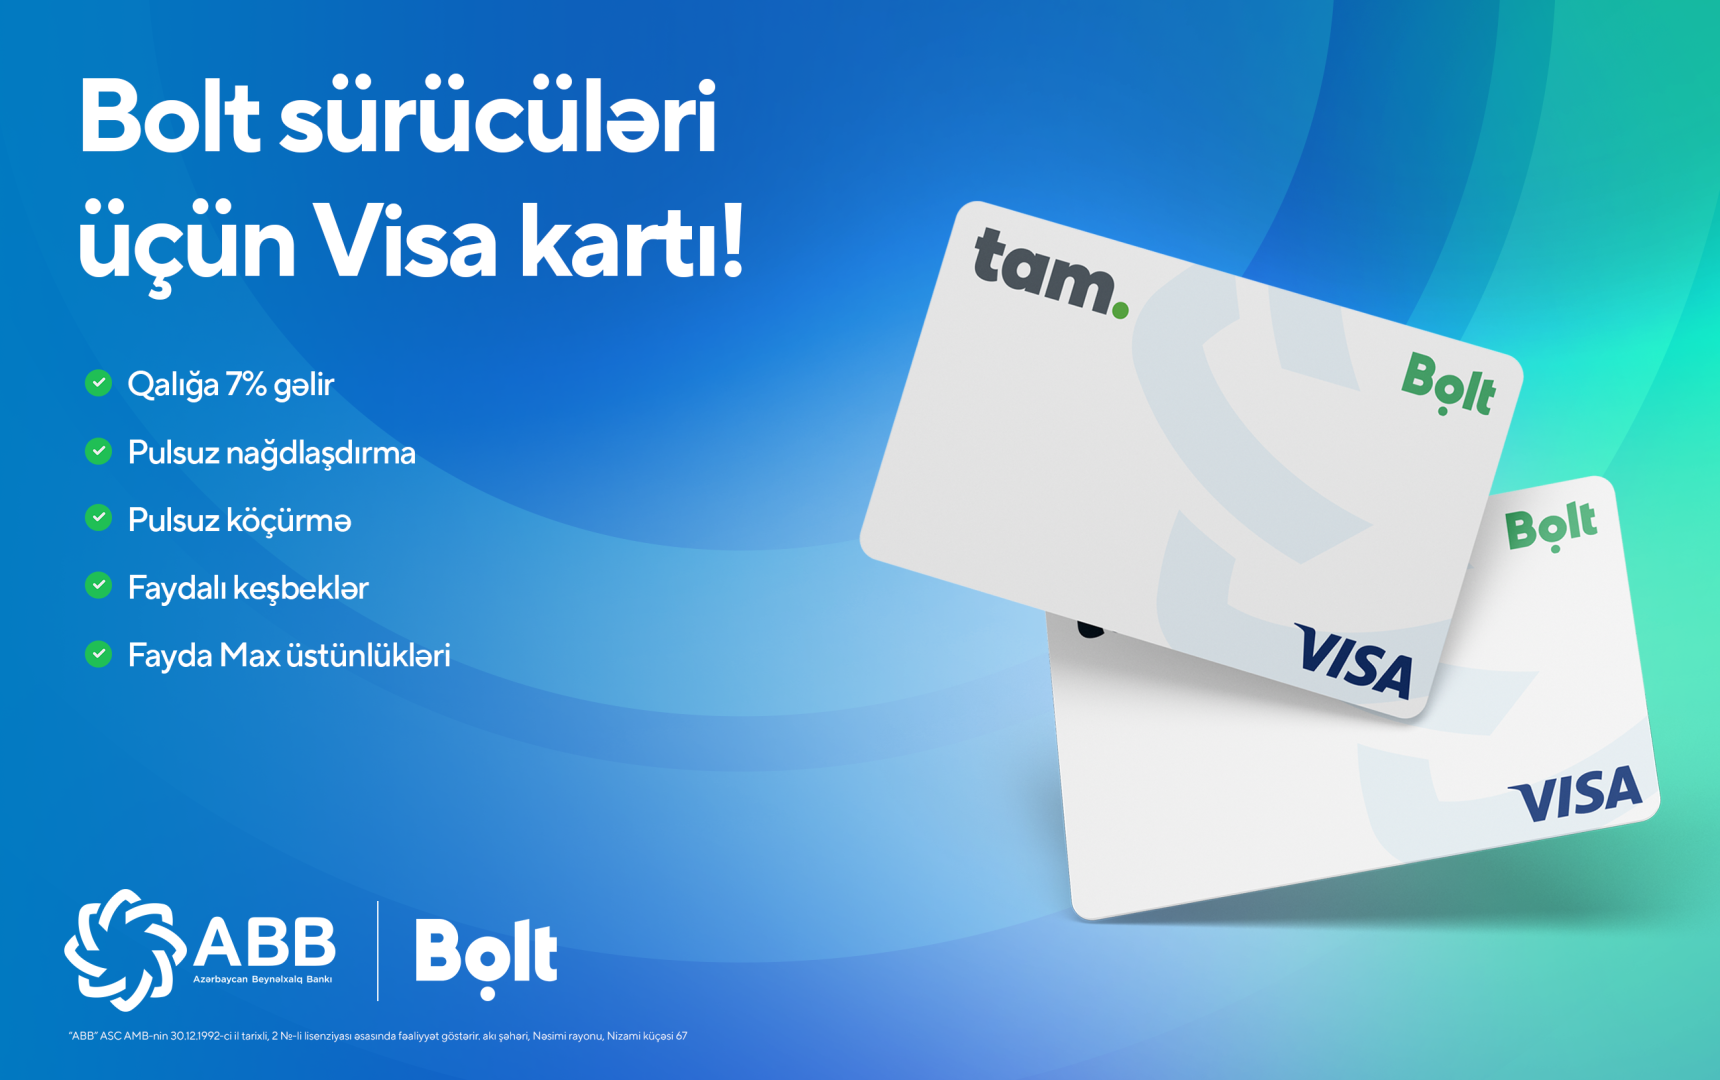 Специальная карта Visa для водителей Bolt от Банка ABB!